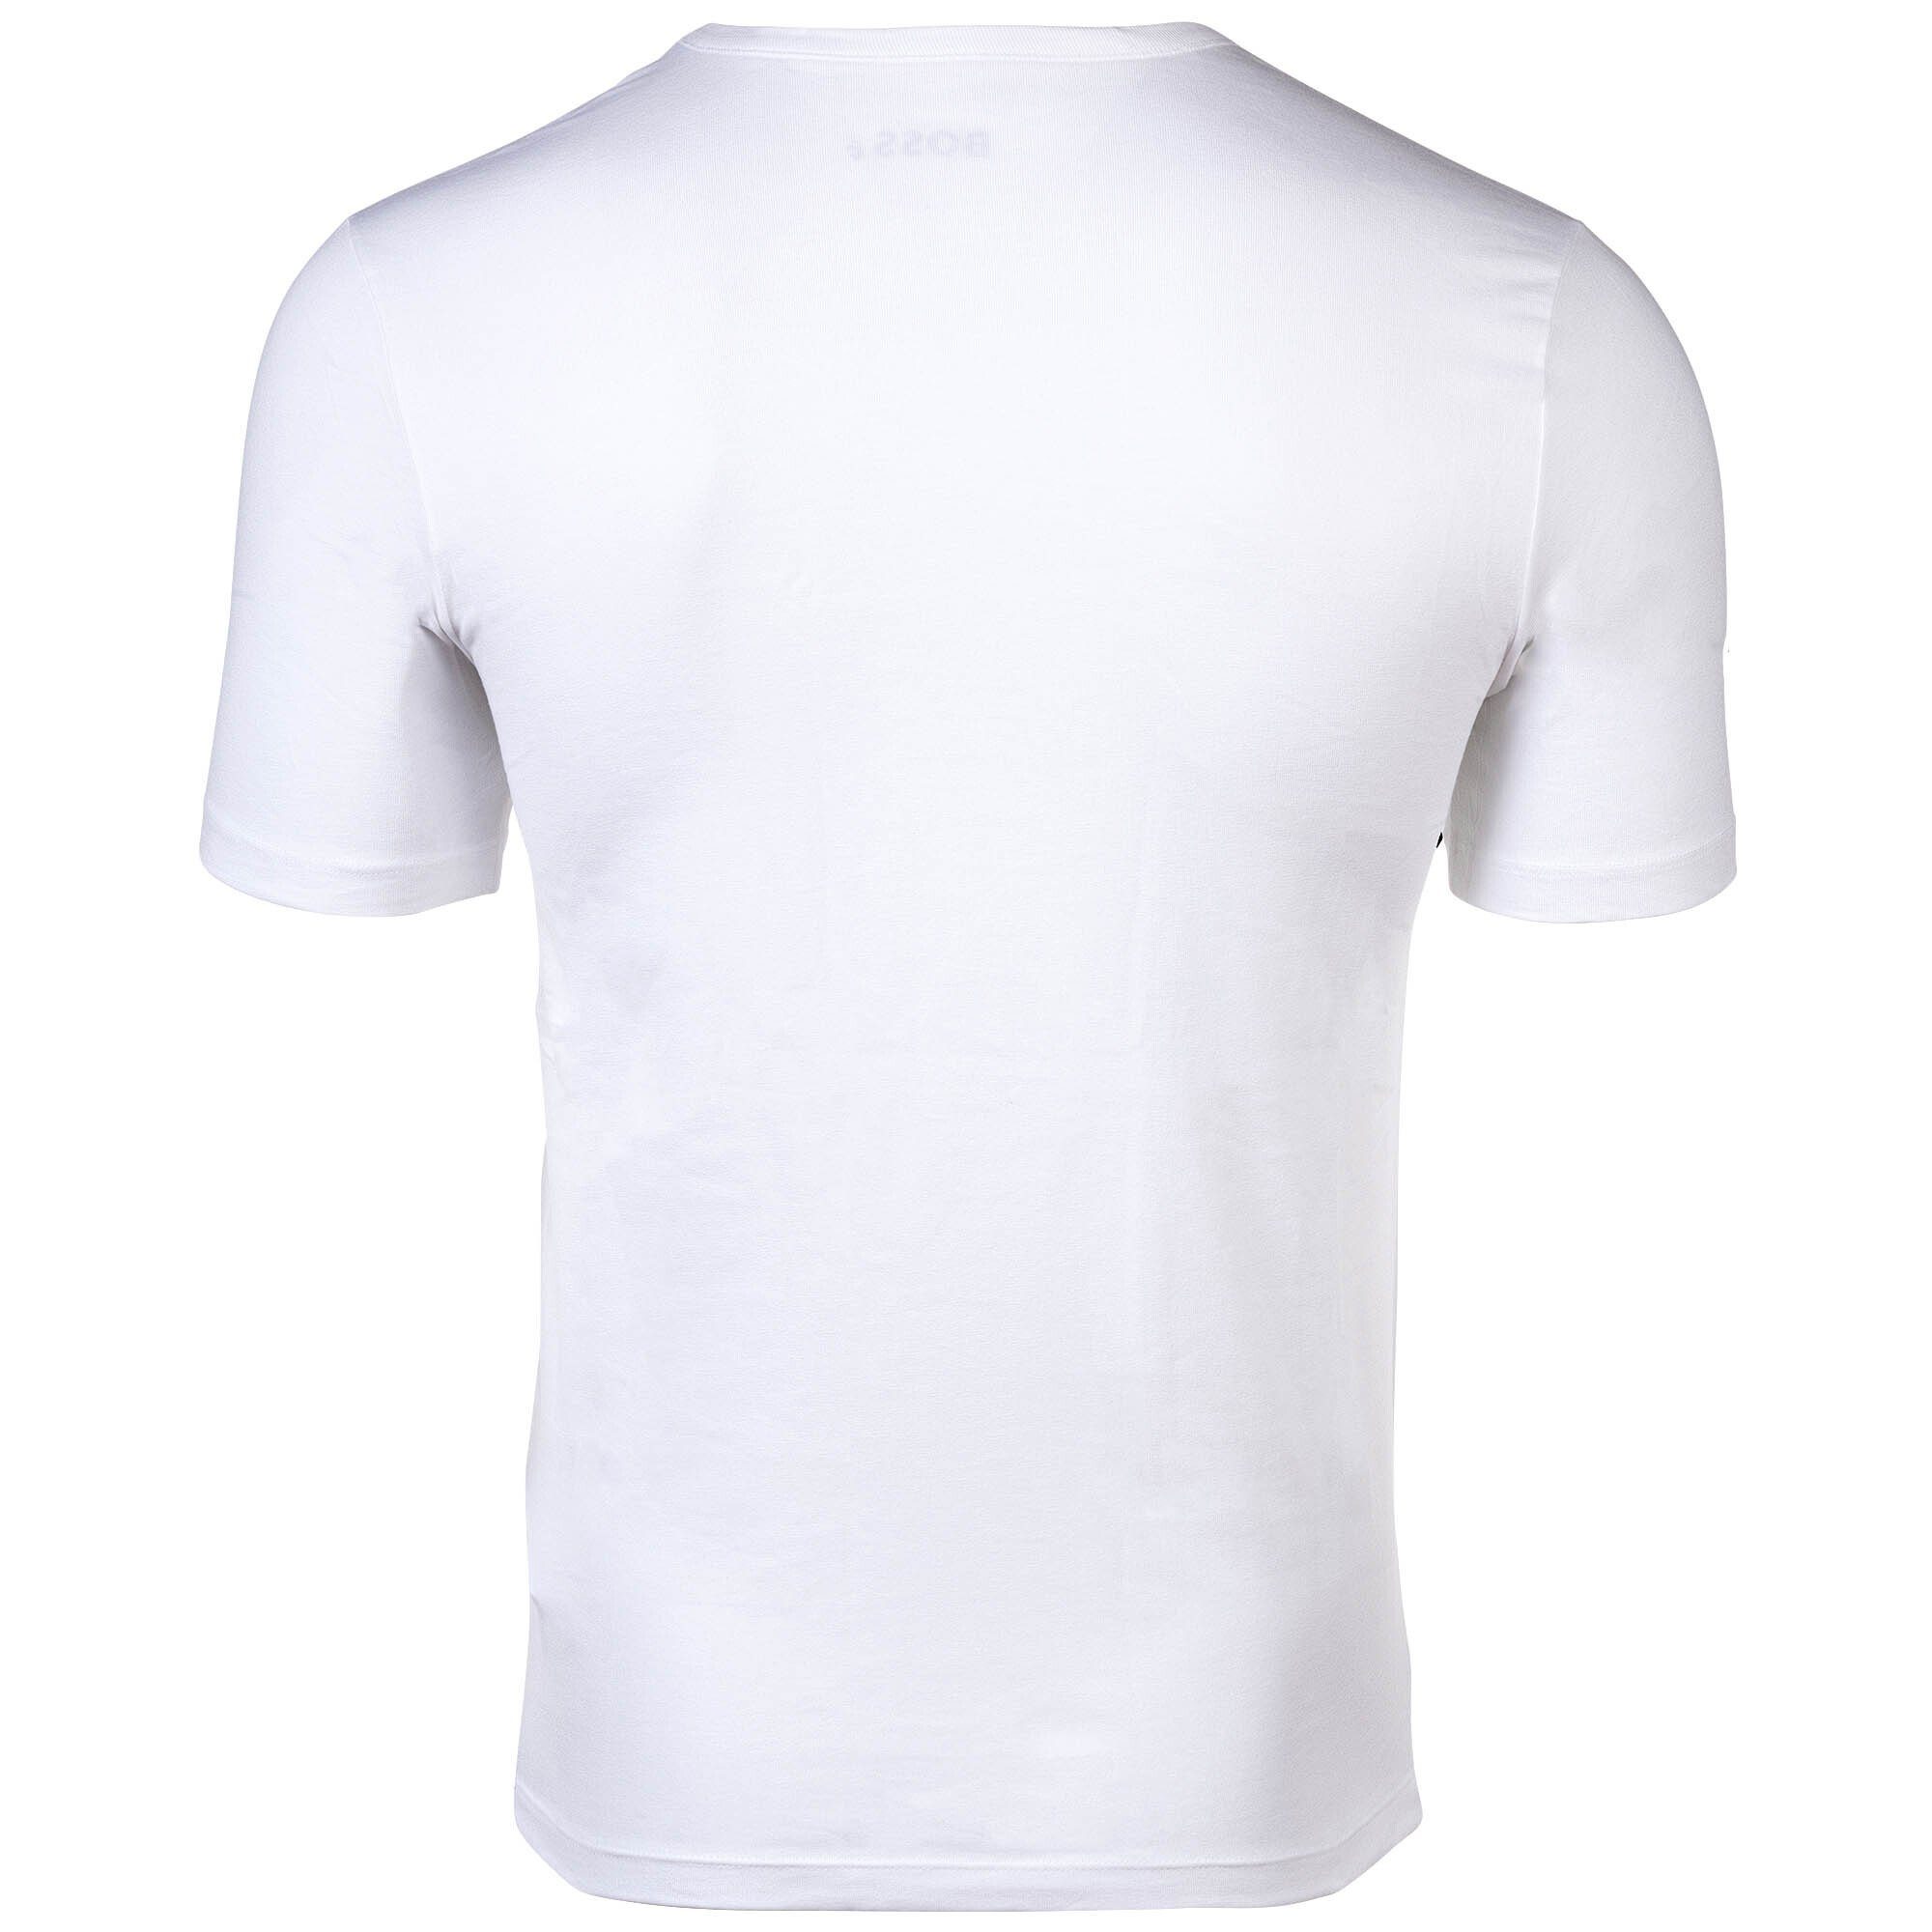 Weiß Rundhals BOSS T-Shirt T-Shirt, Herren 6er Pack Classic, - RN